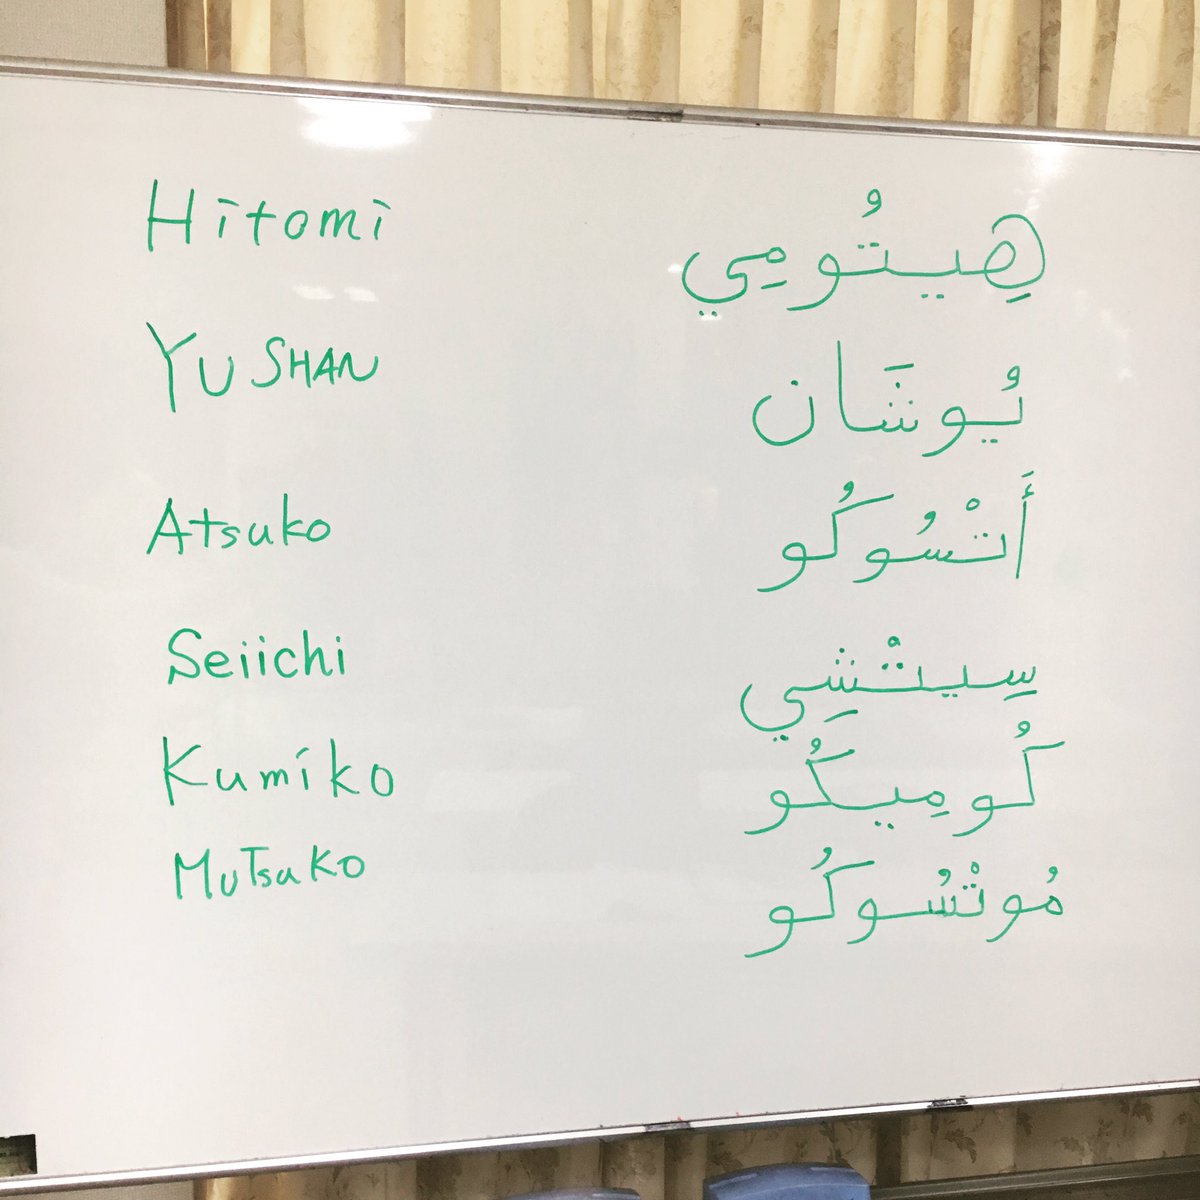 Asalaya Hitomi Auf Twitter 本日もアラビア語レッスン楽しかった Asalaya عسليةは書けるのに Hitomi هيتوميは書けないという本末転倒な事態なのでこれから練習しよう アラビア語のhi هيの字がすごい好きだから Haifa هيفا が好きだから 自分の名前に入って